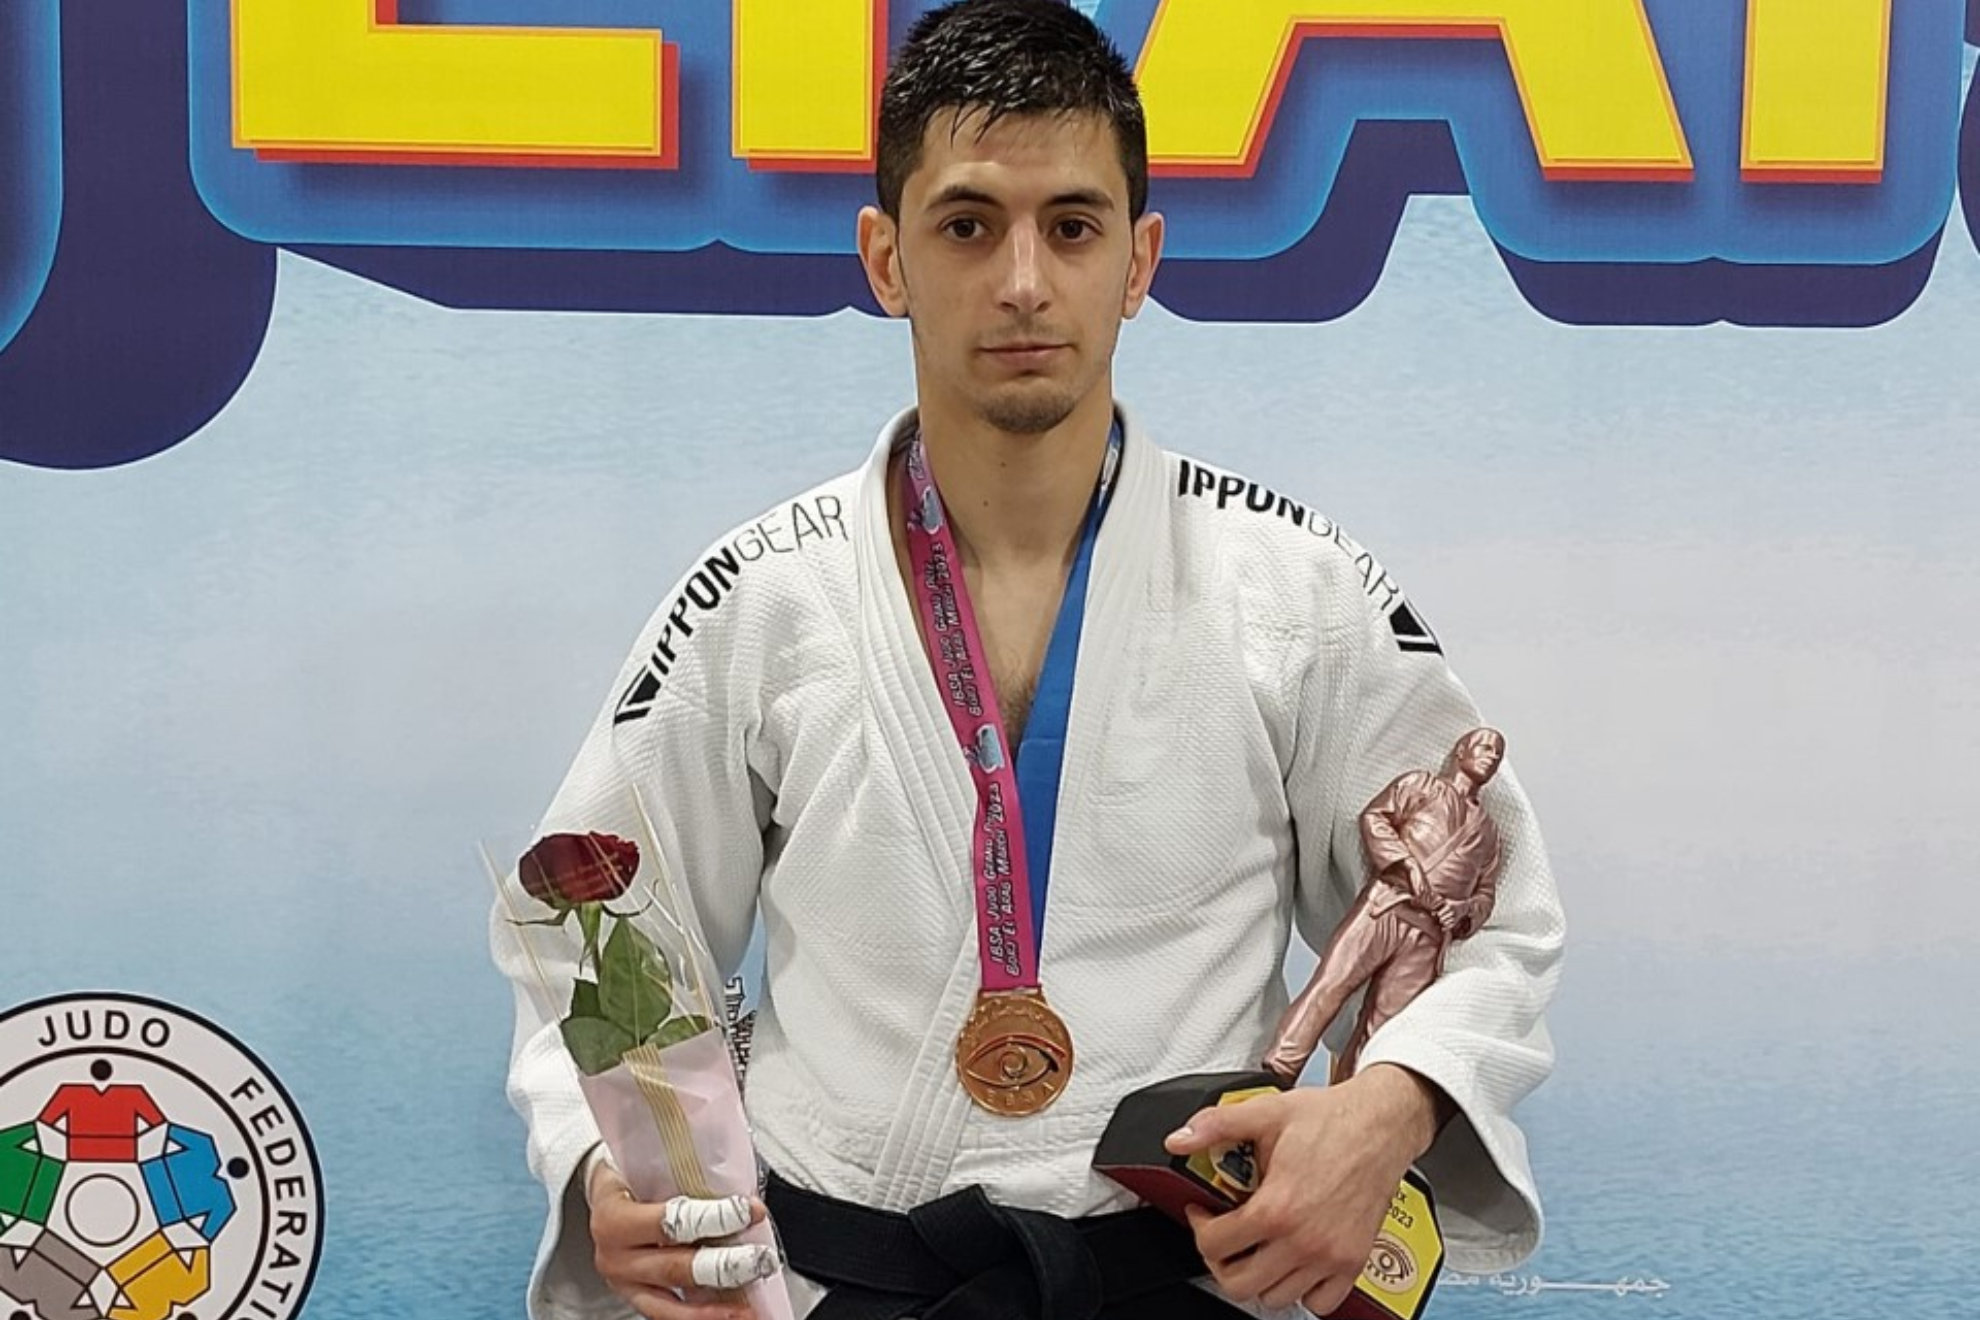 Daniel Gavilán, bronce en el Grand Prix de Egipto de judo.